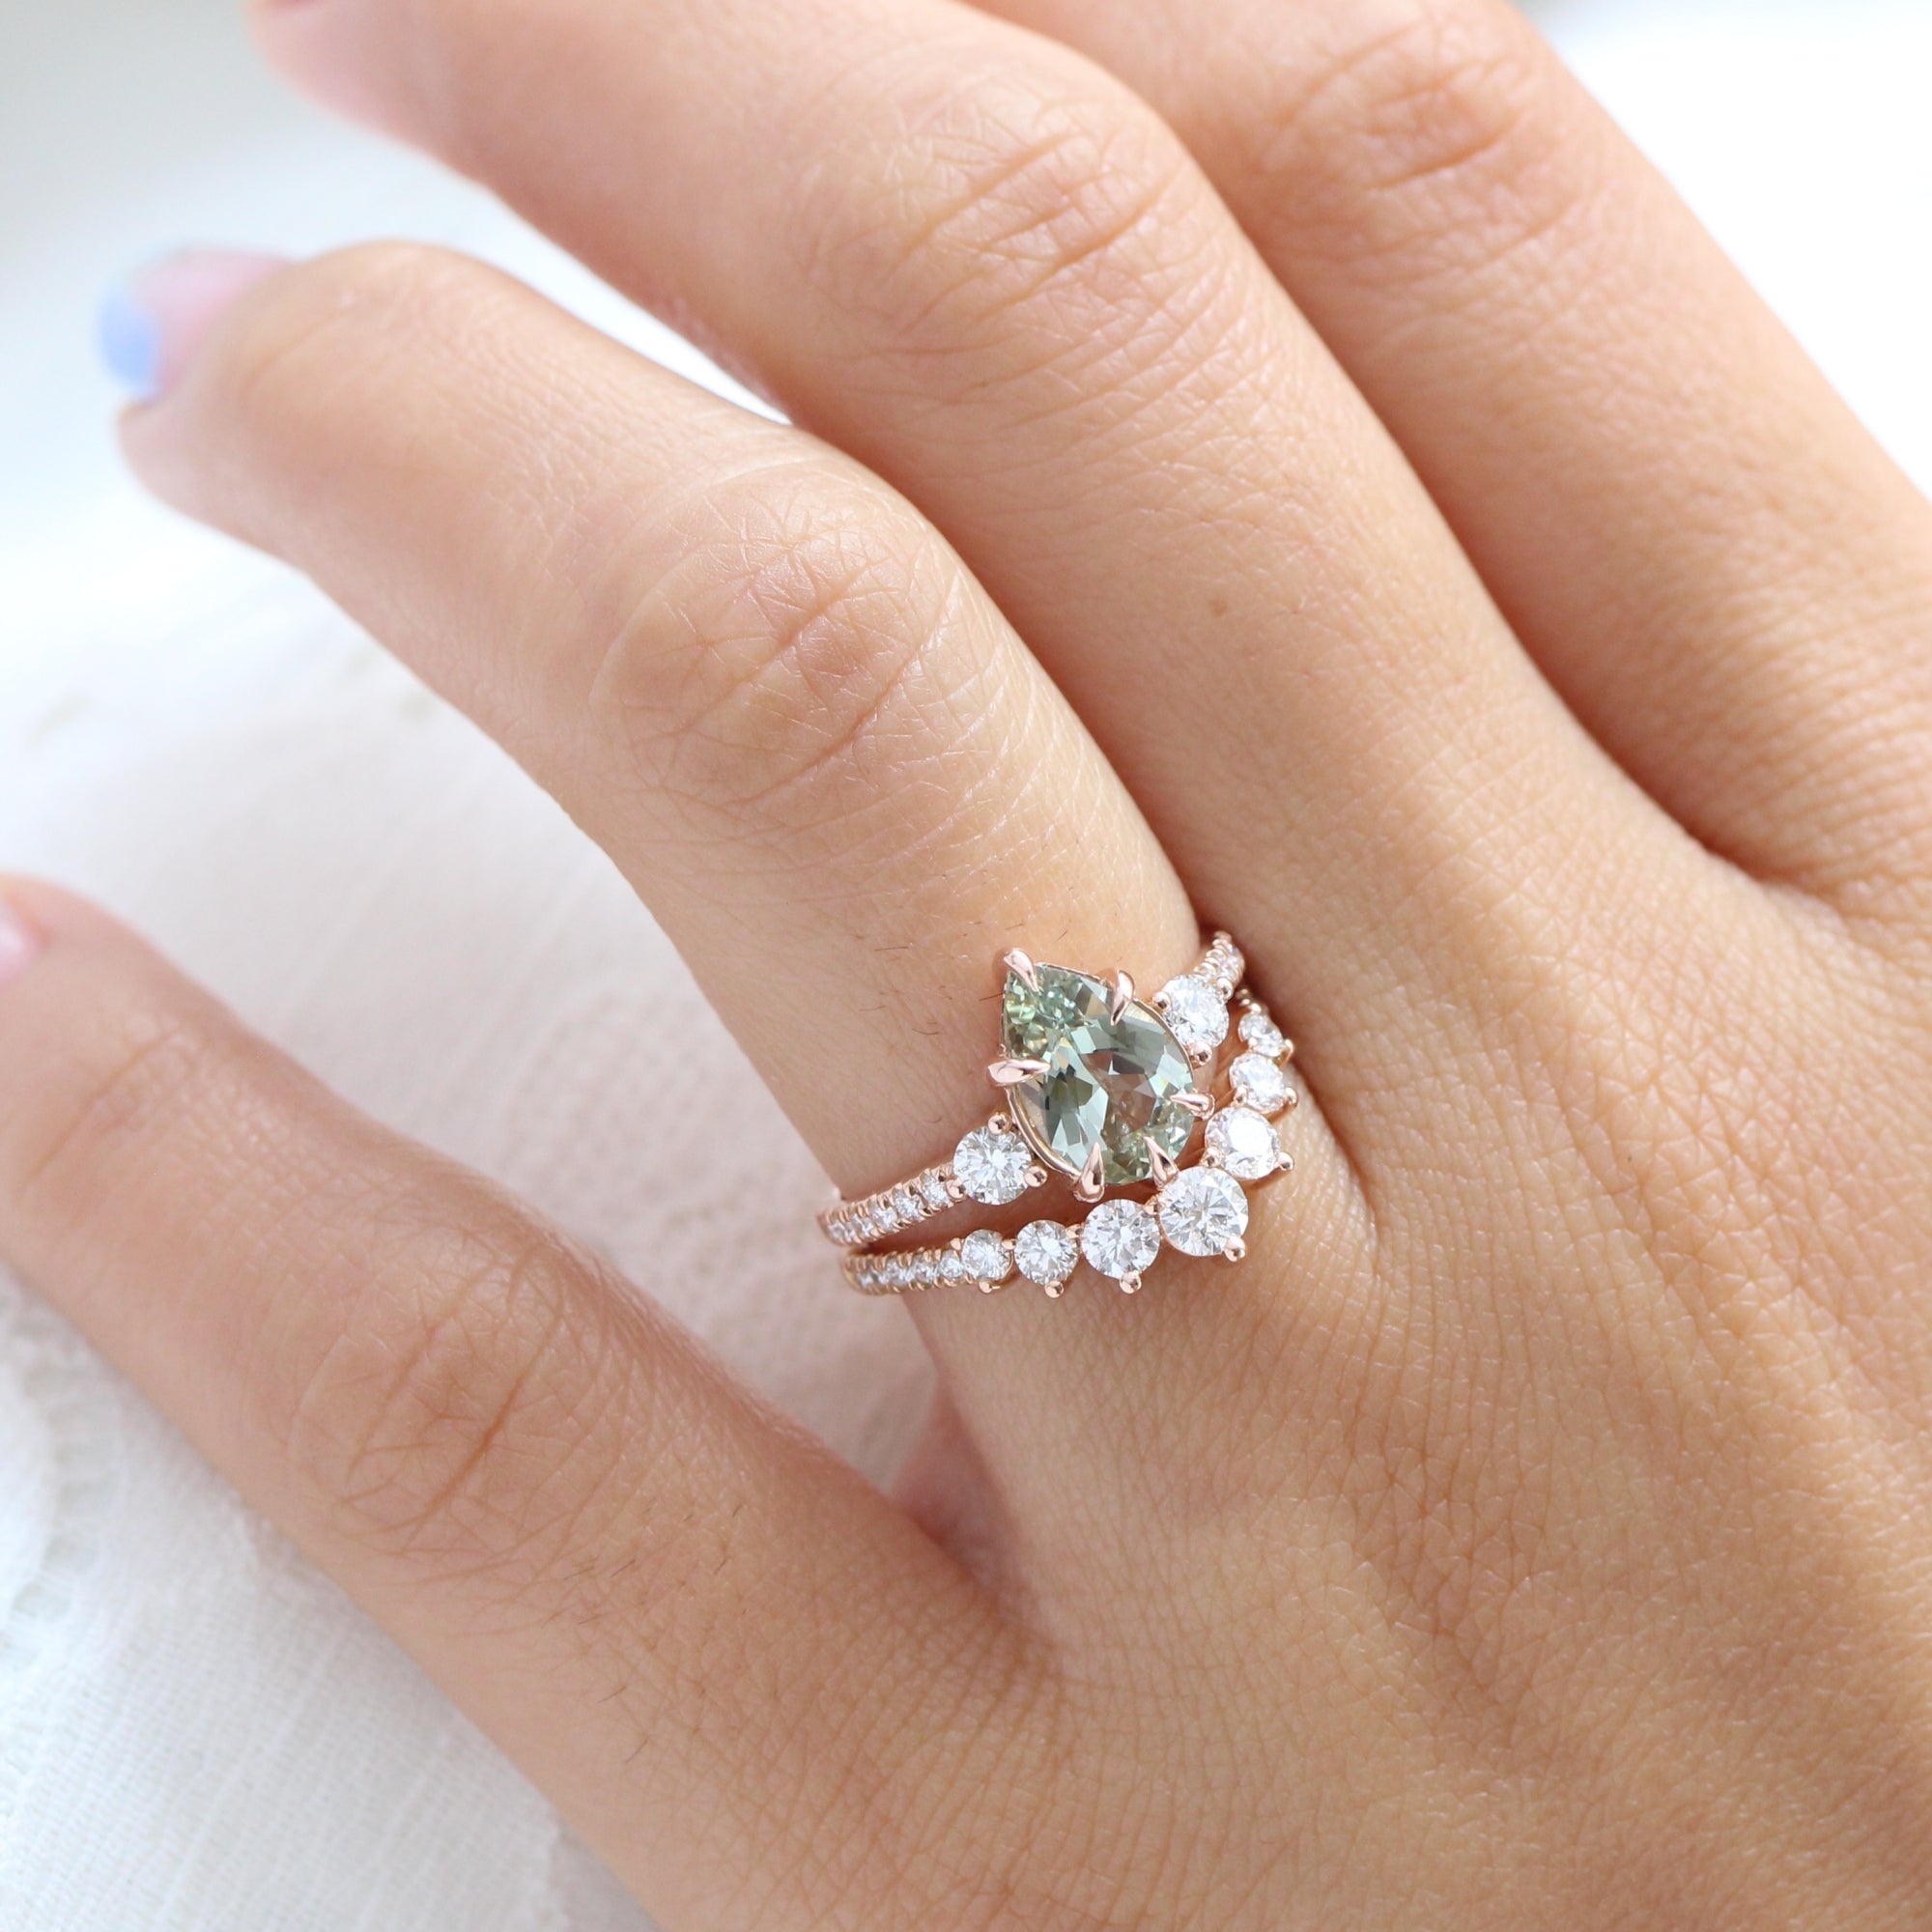 Pear sea foam green sapphire diamond ring rose gold 3 stone ring la more design jewelry